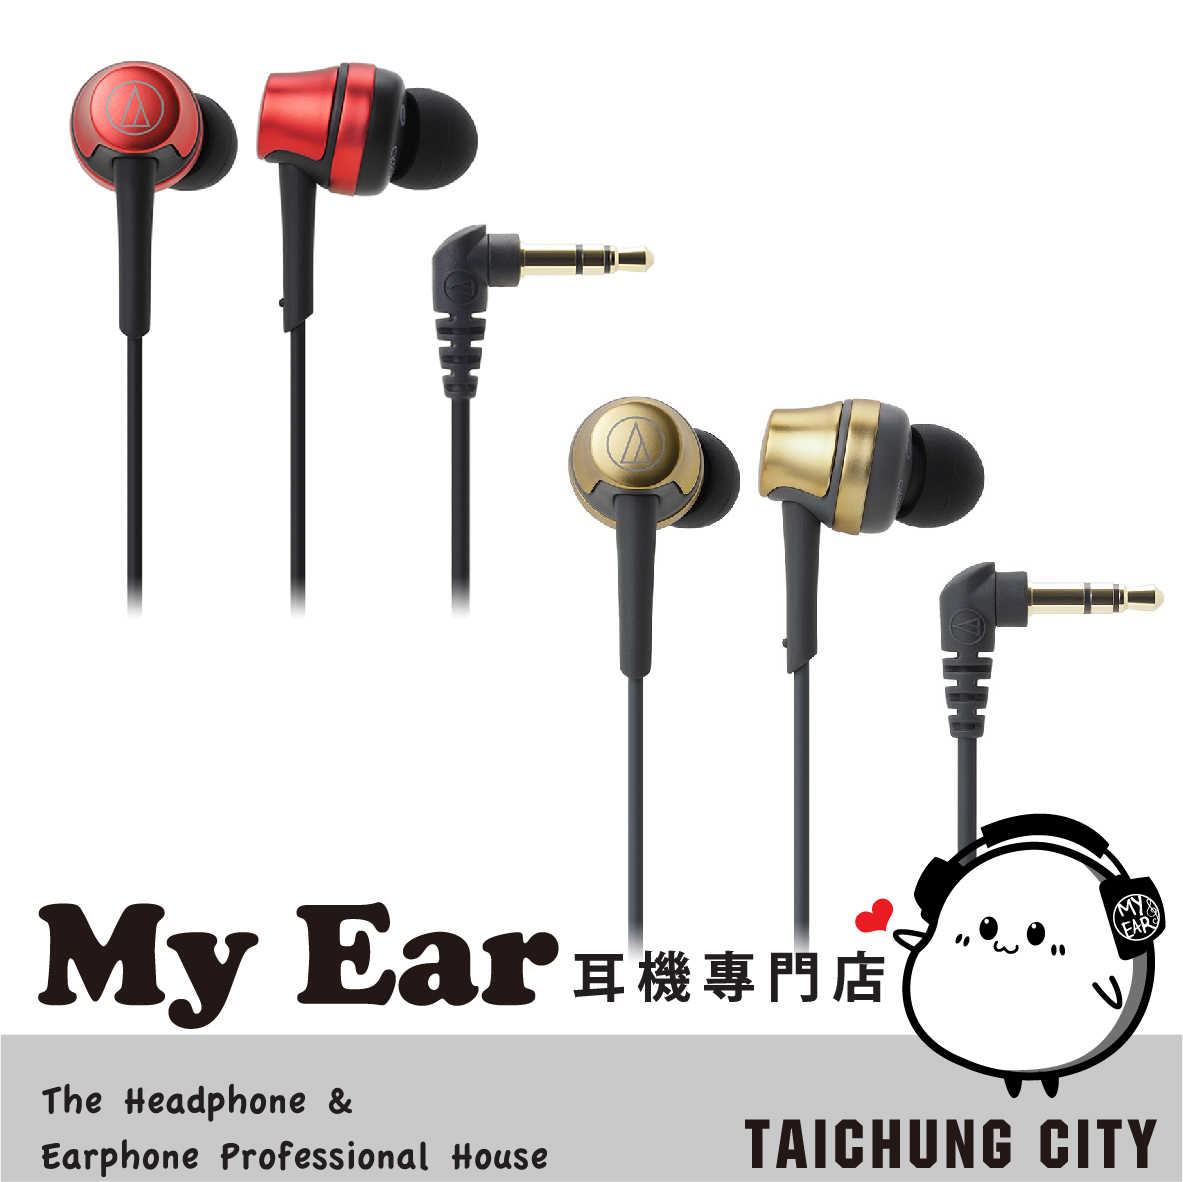 鐵三角 ATH-CKR50 耳道式 耳機 多色 高音質人聲 | My Ear 耳機專門店